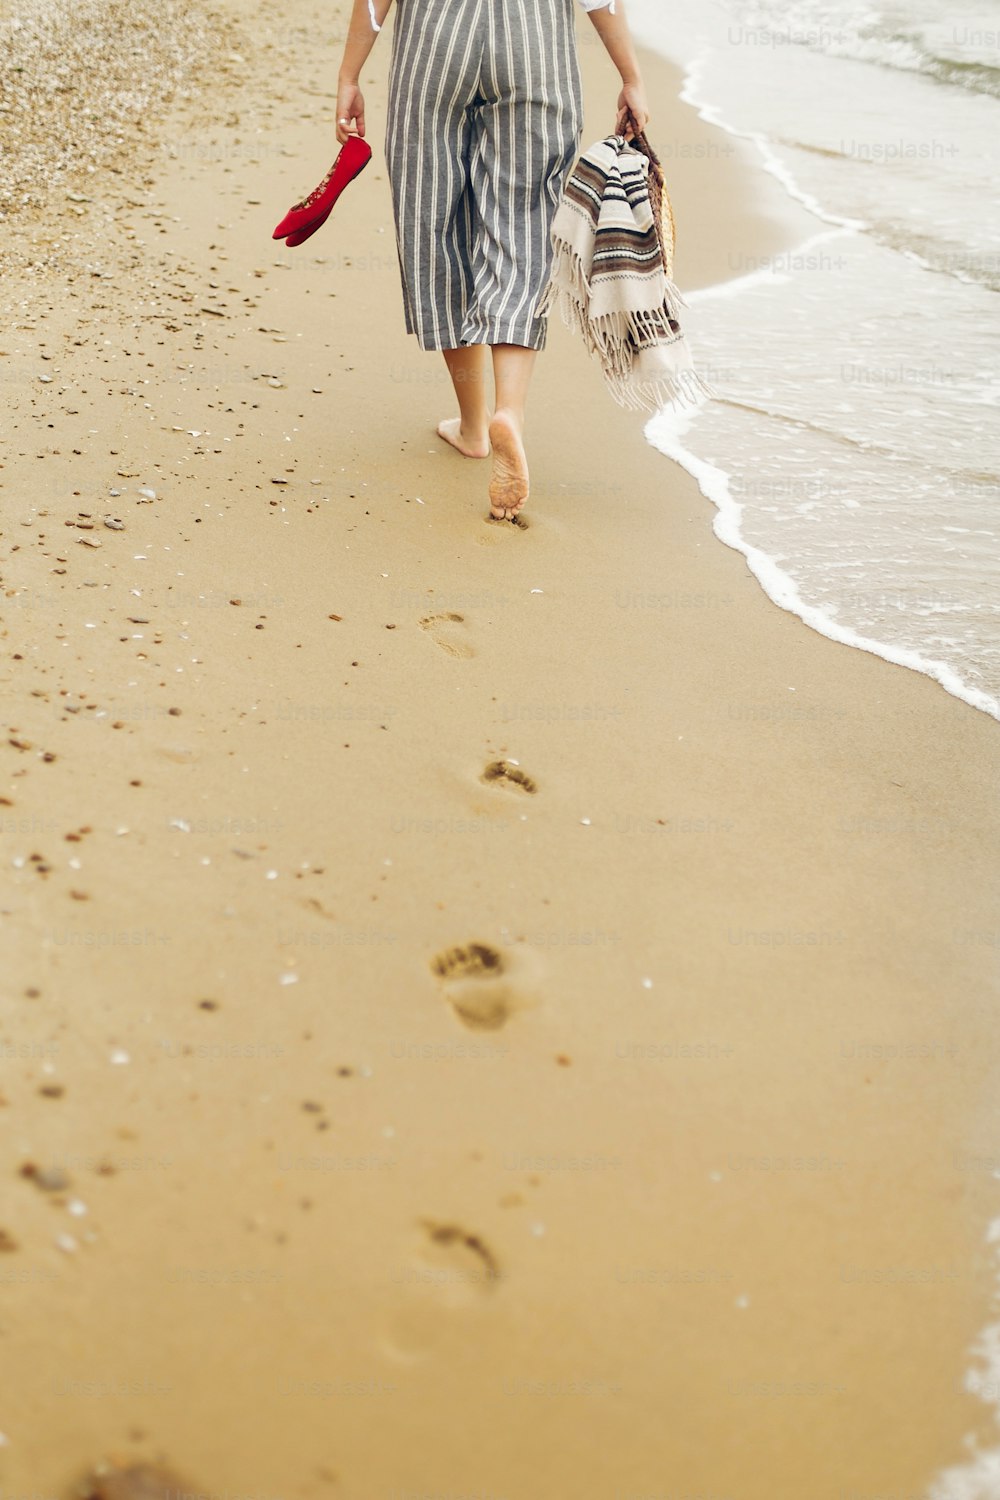 Mulher que caminha descalça na praia, vista traseira das pernas. Menina relaxando na praia de areia, andando com sapatos e bolsa nas mãos. Conceito de férias de verão